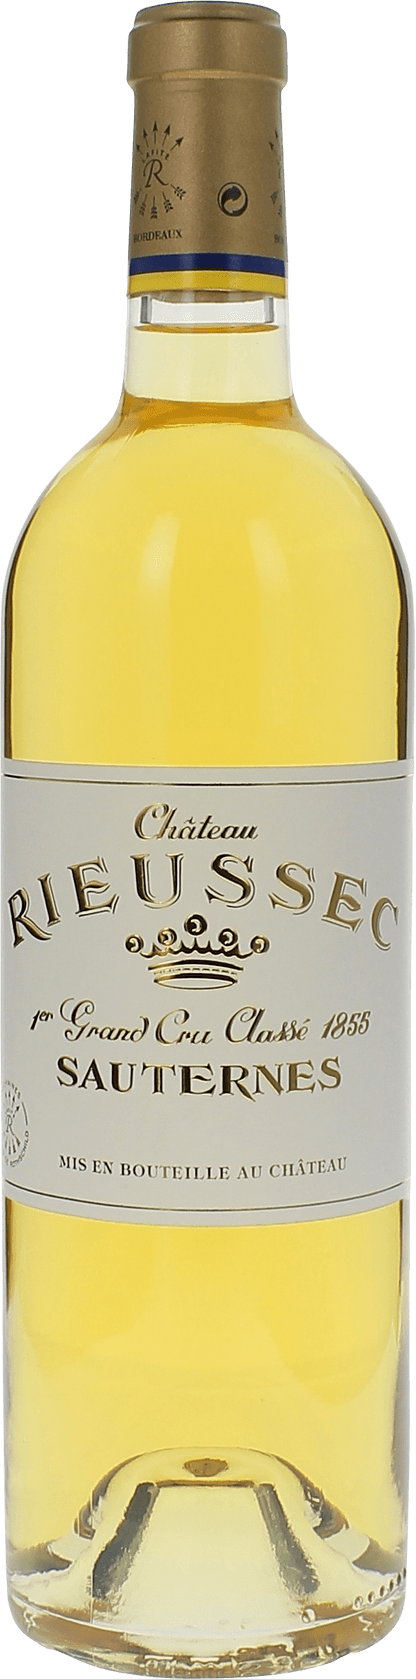 Rieussec 2016 1er cru Sauternes, Bordeaux blanc